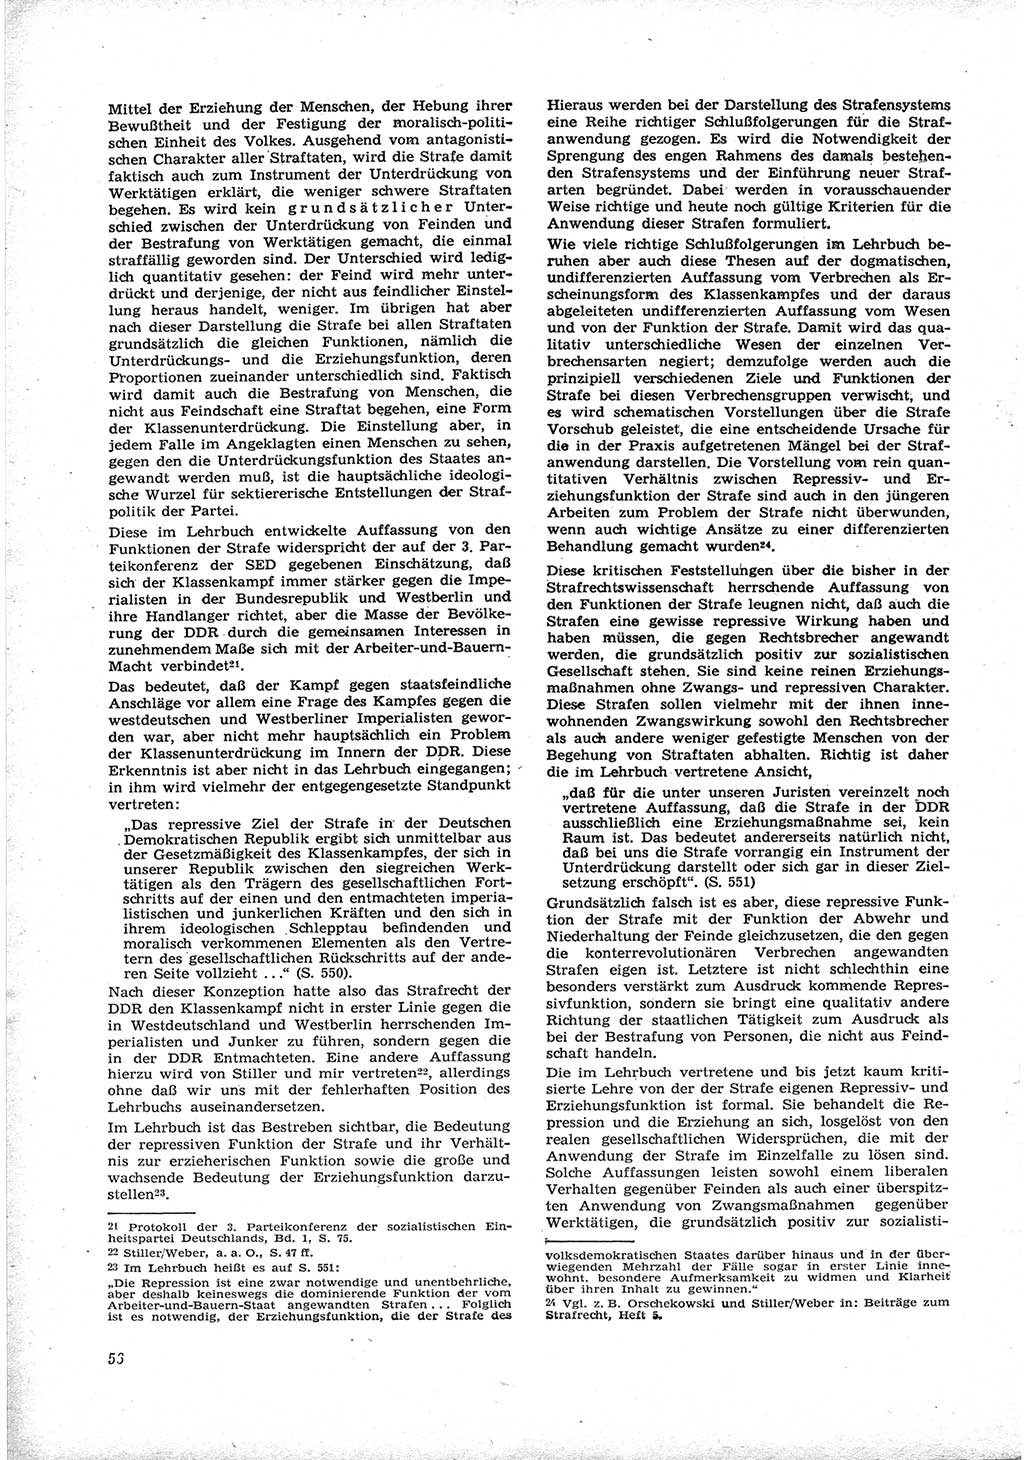 Neue Justiz (NJ), Zeitschrift für Recht und Rechtswissenschaft [Deutsche Demokratische Republik (DDR)], 17. Jahrgang 1963, Seite 56 (NJ DDR 1963, S. 56)